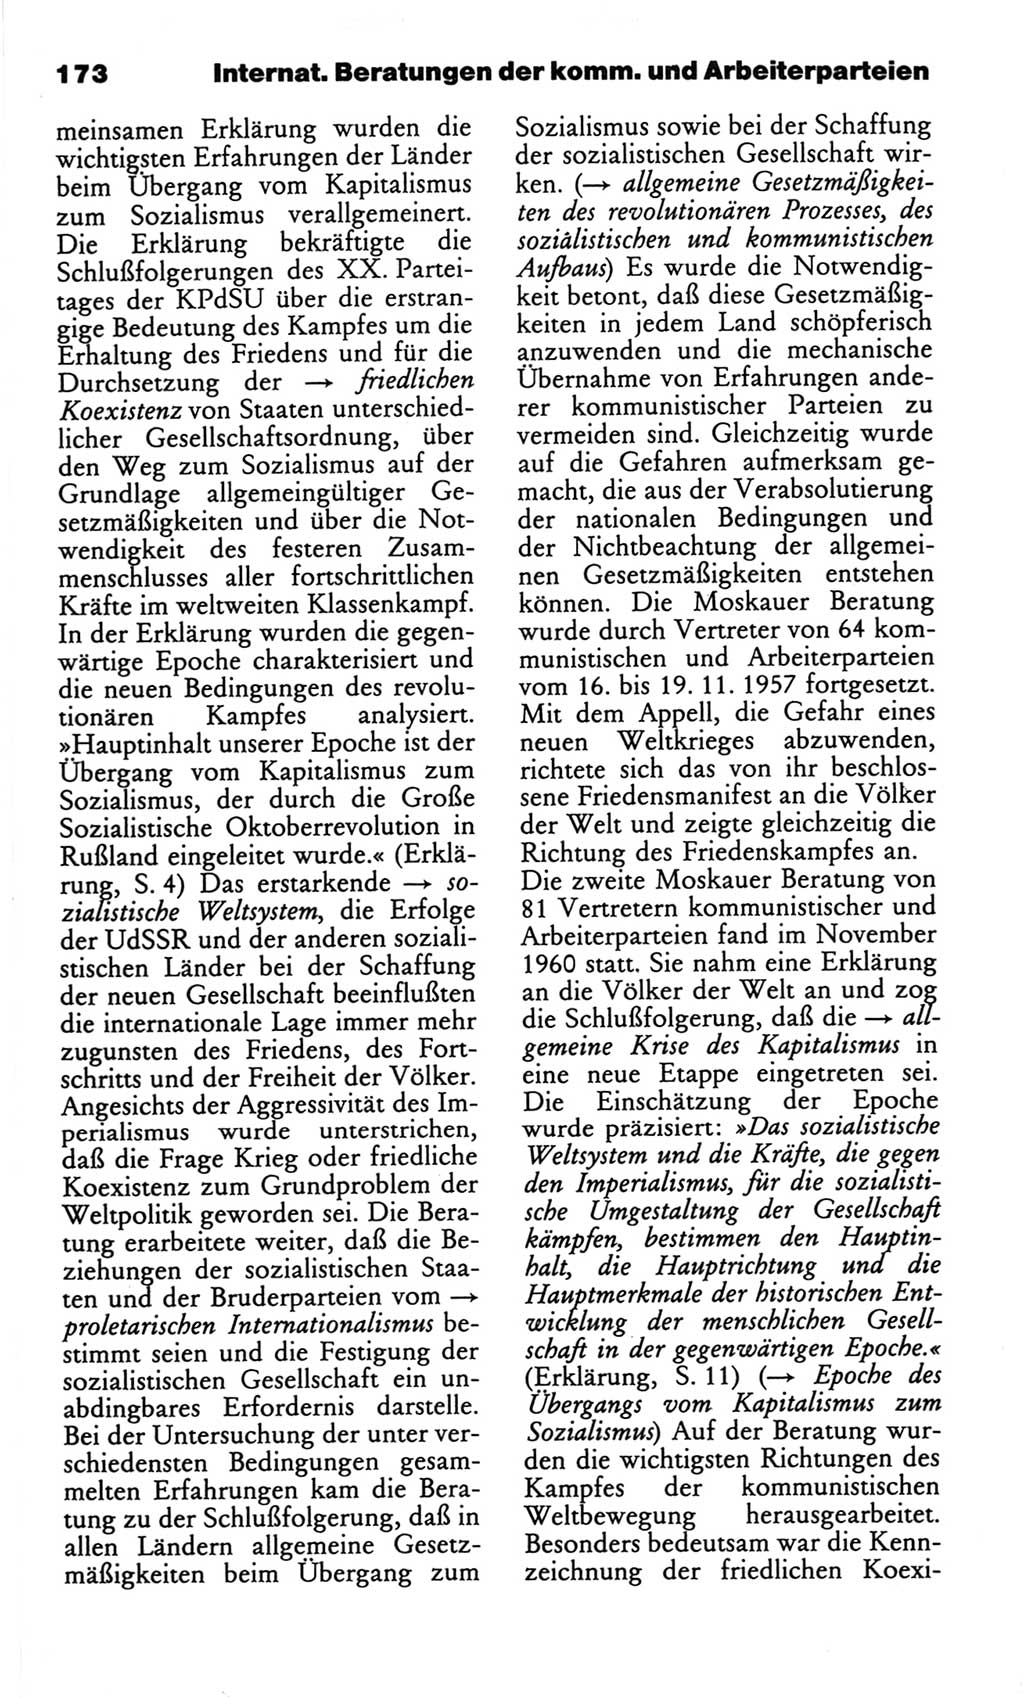 Wörterbuch des wissenschaftlichen Kommunismus [Deutsche Demokratische Republik (DDR)] 1982, Seite 173 (Wb. wiss. Komm. DDR 1982, S. 173)